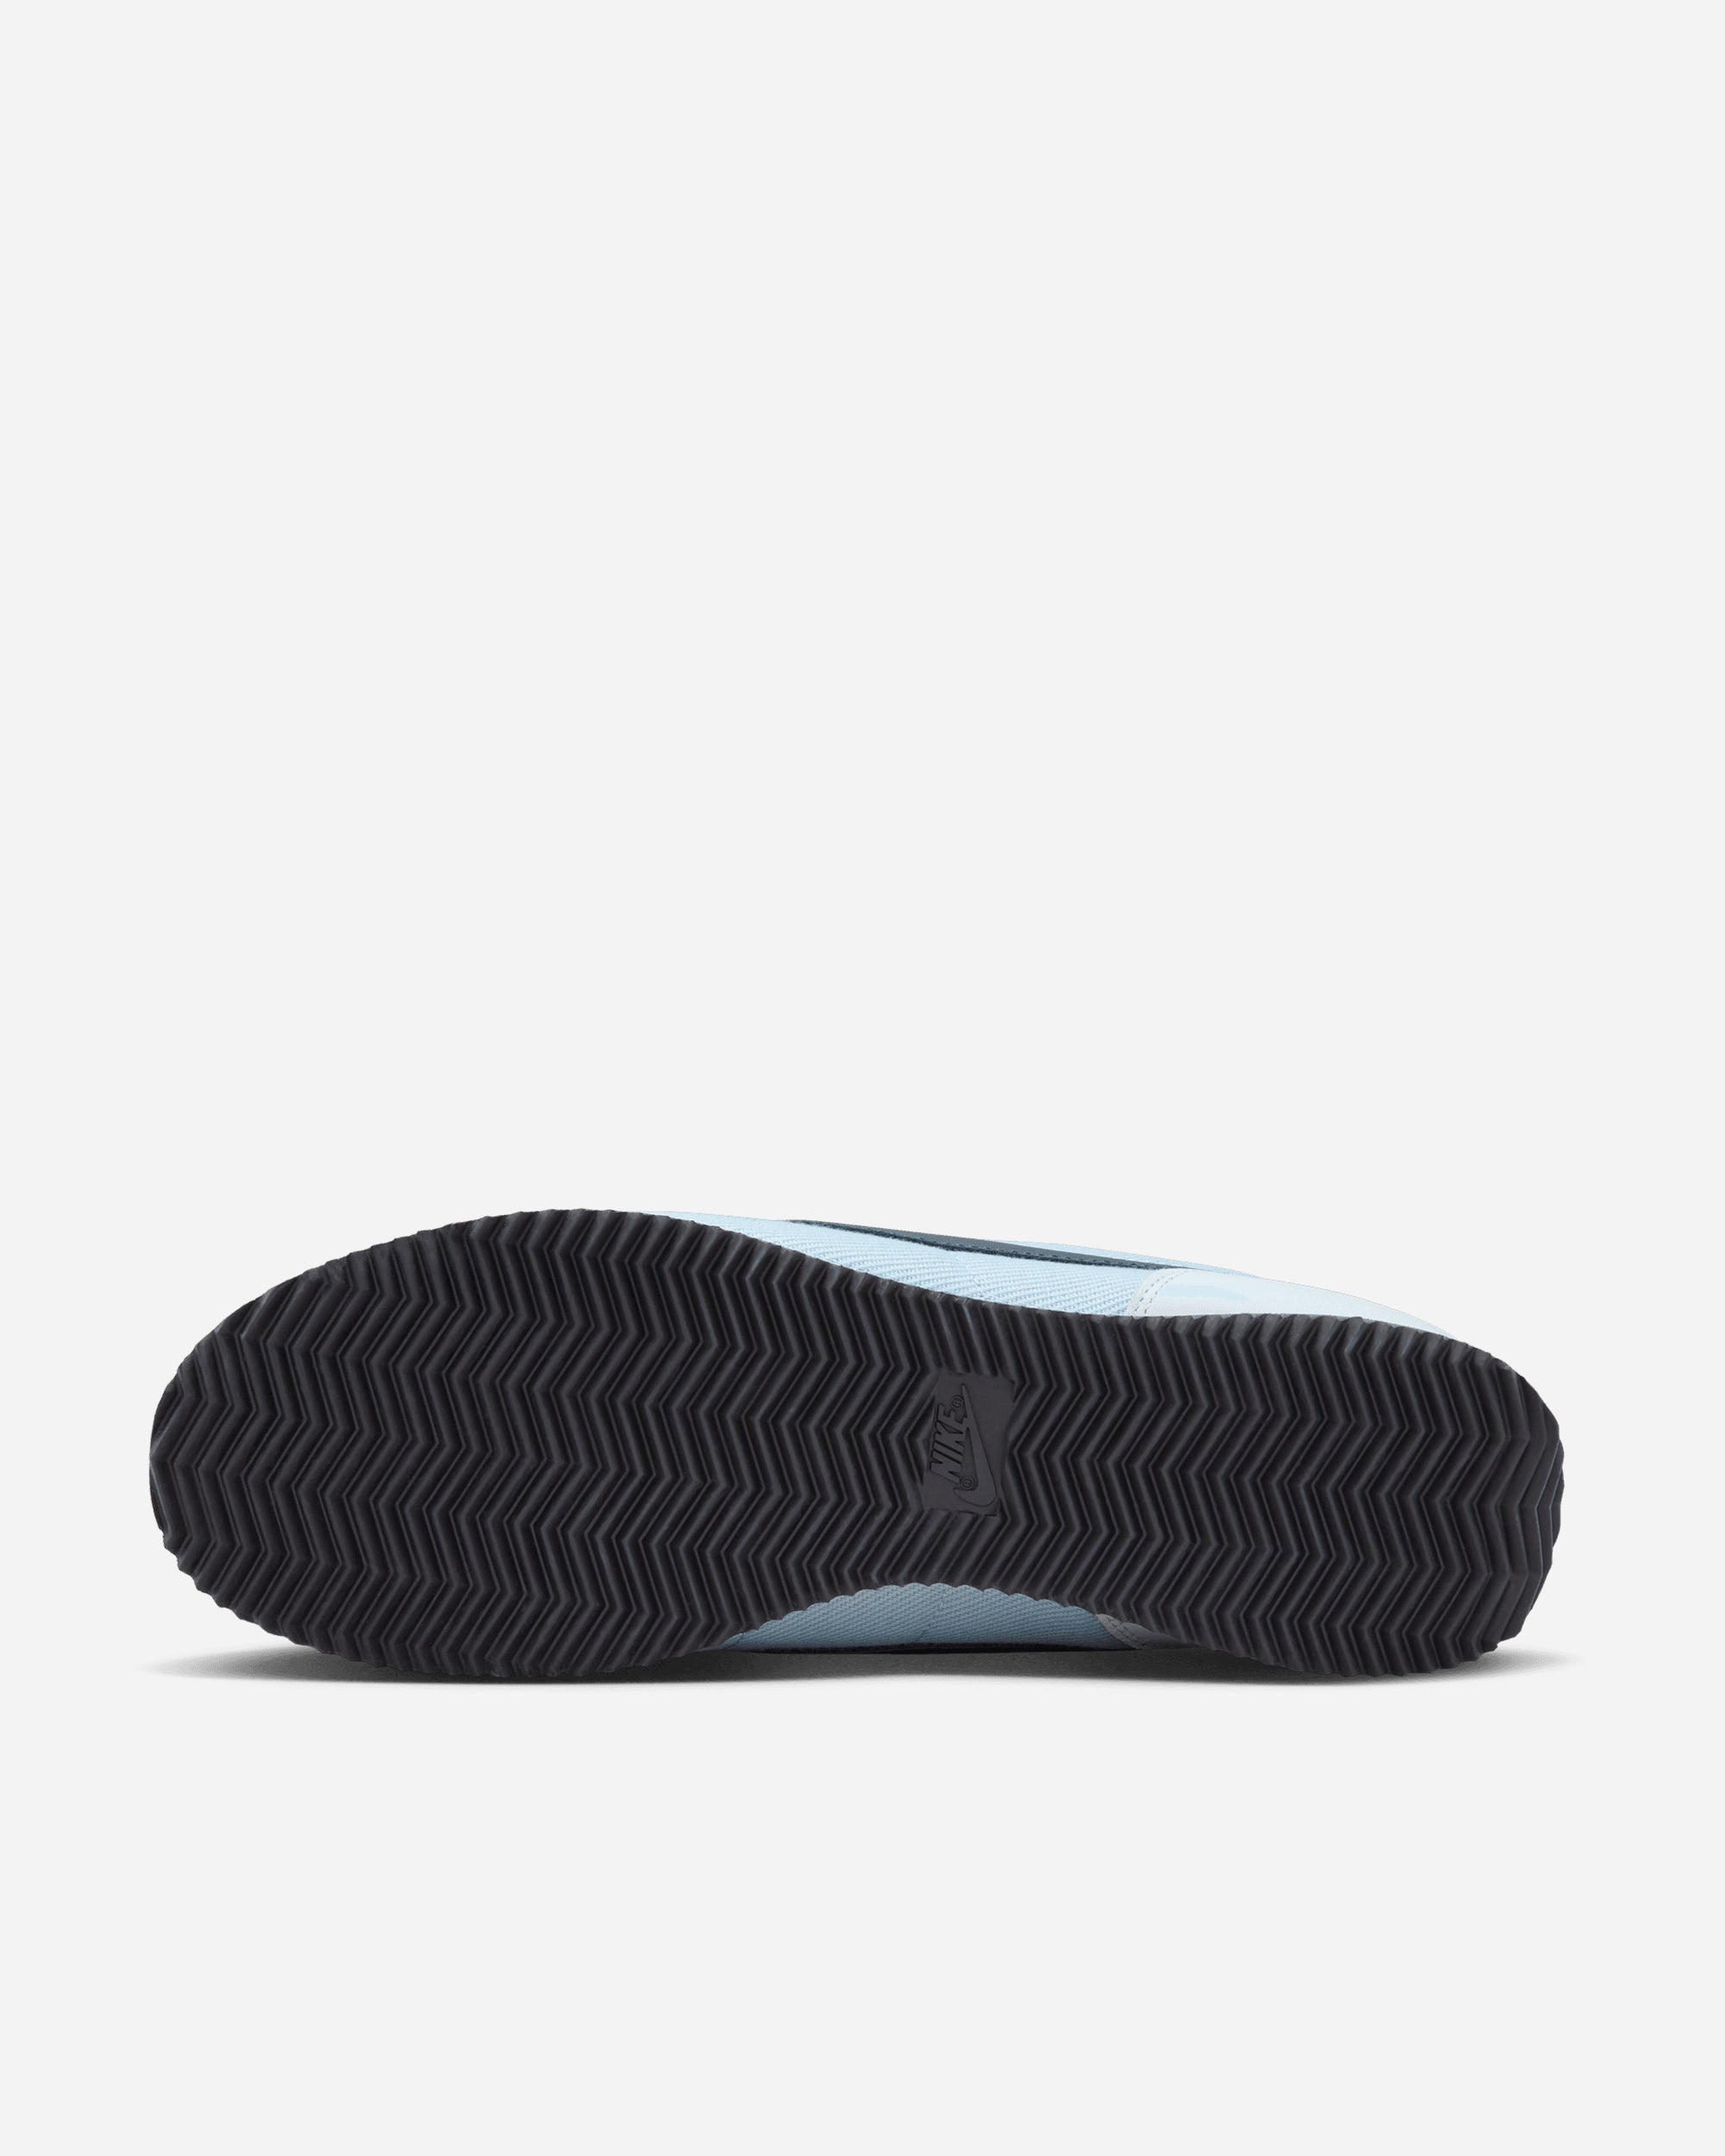 Nike Cortez LT ARMORY BLUE/DARK OBSIDIAN HF0100-400